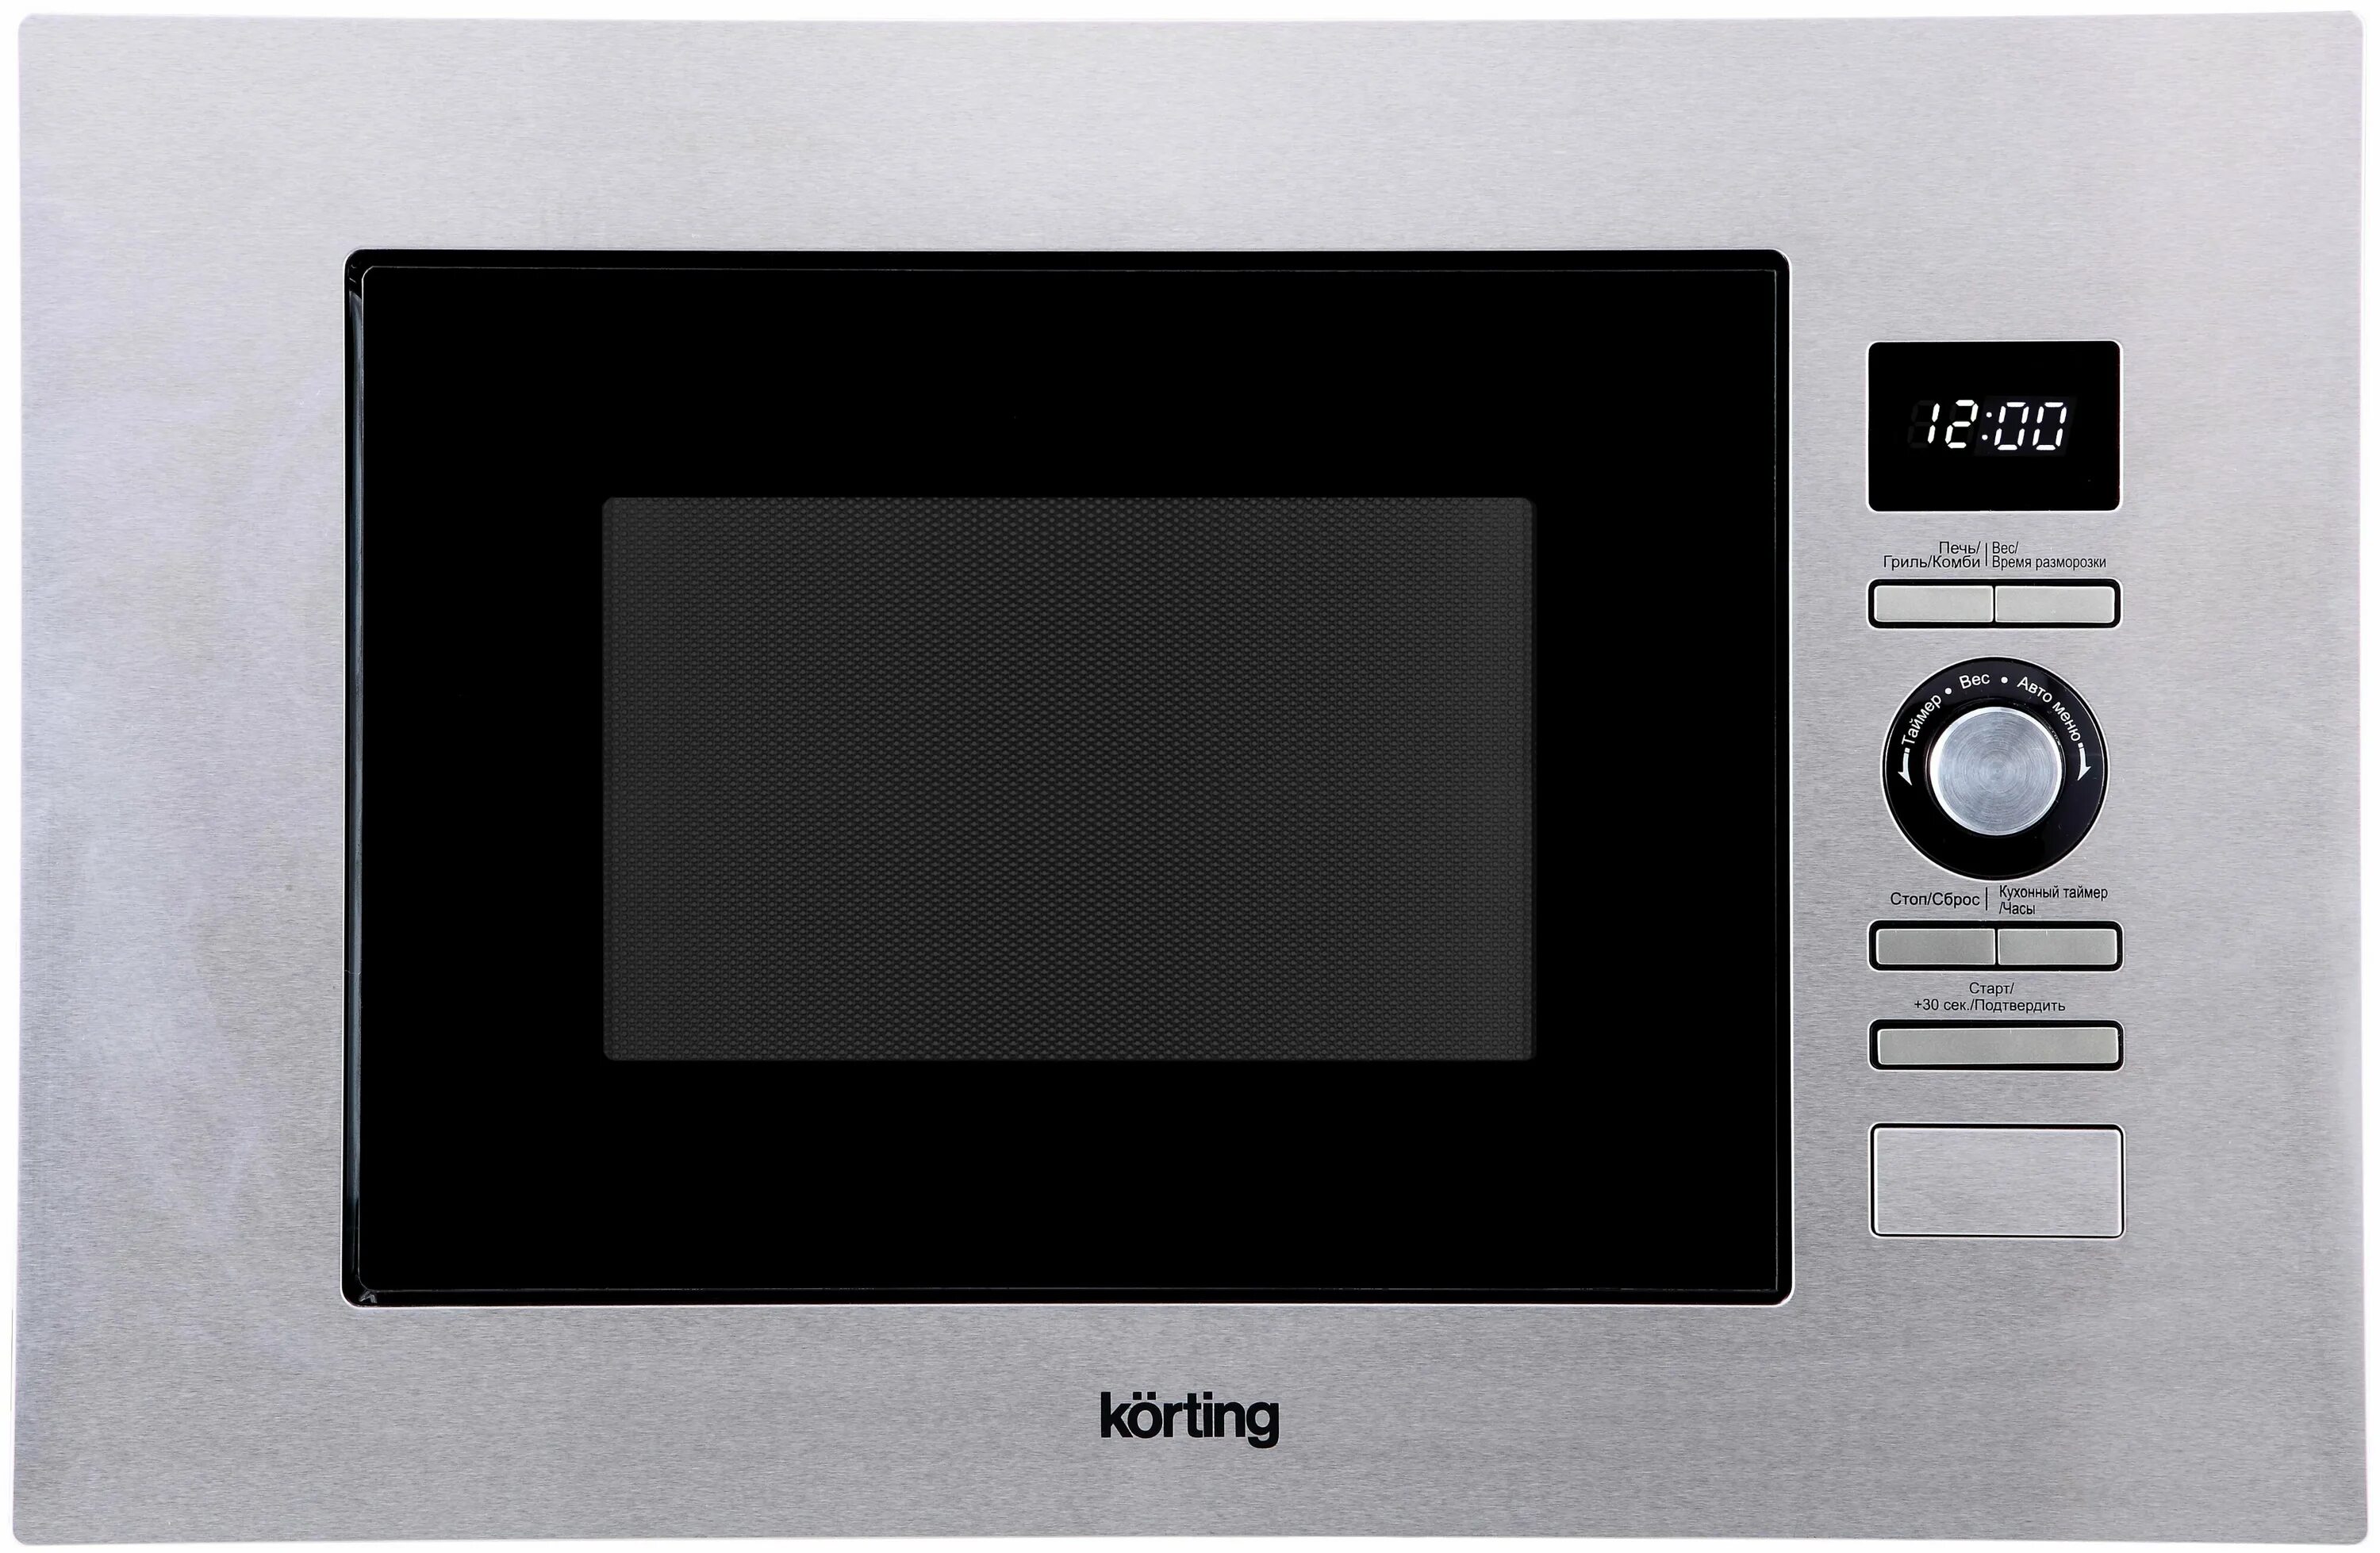 Микроволновая печь встраиваемая korting KMI 720 X. Встроенная свч рейтинг